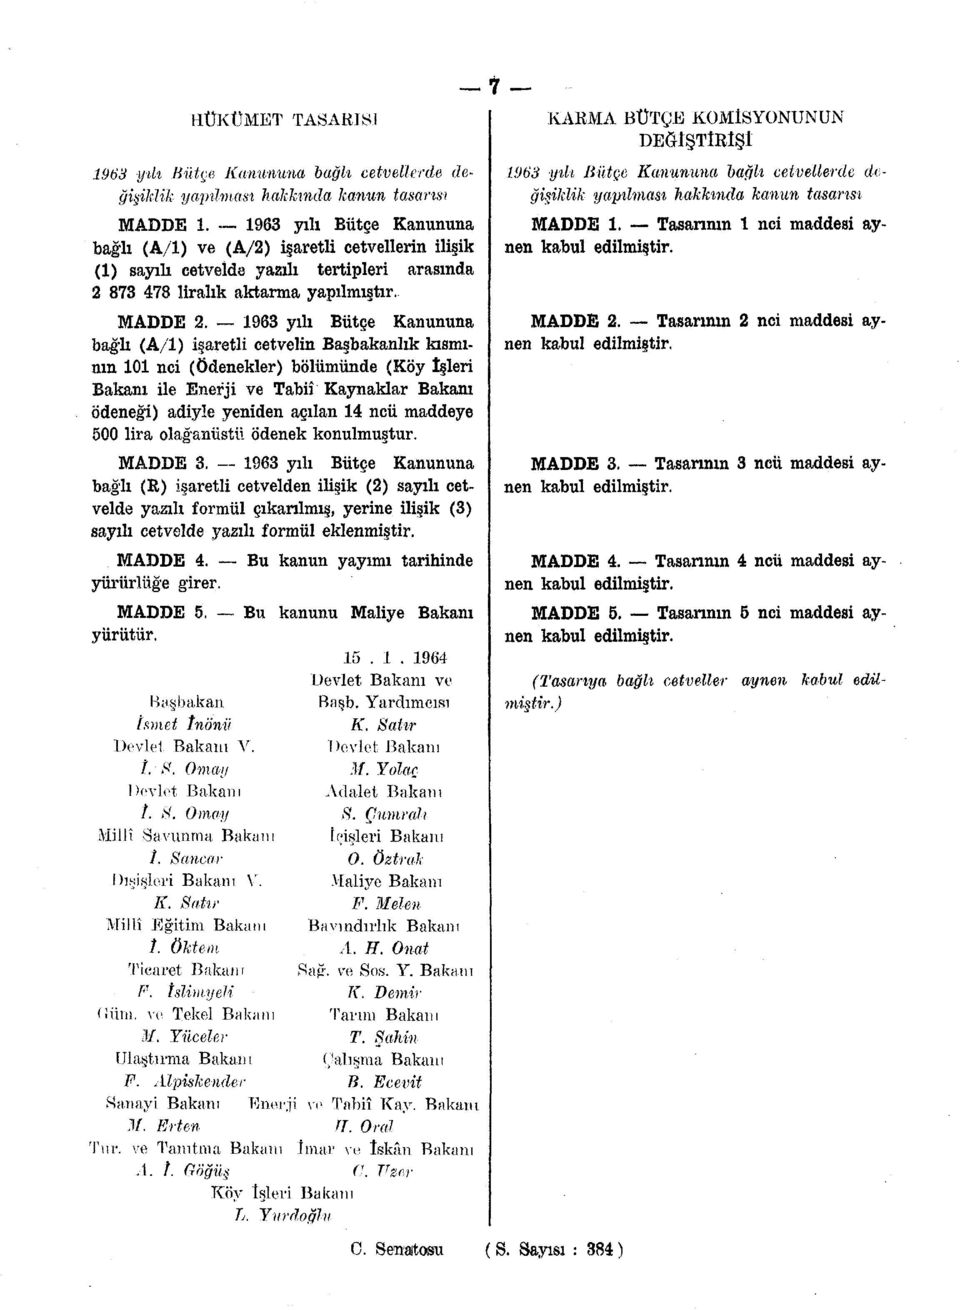 1963 yılı Bütçe Kanununa bağlı (A/l) işaretli cetvelin Başbakanlık kısmının 101 nci (Ödenekler) bölümünde (Köy îşleri Bakanı ile Enerji ve Tabiî Kaynaklar Bakanı ödeneği) adiyle yeniden açılan 14 ncü